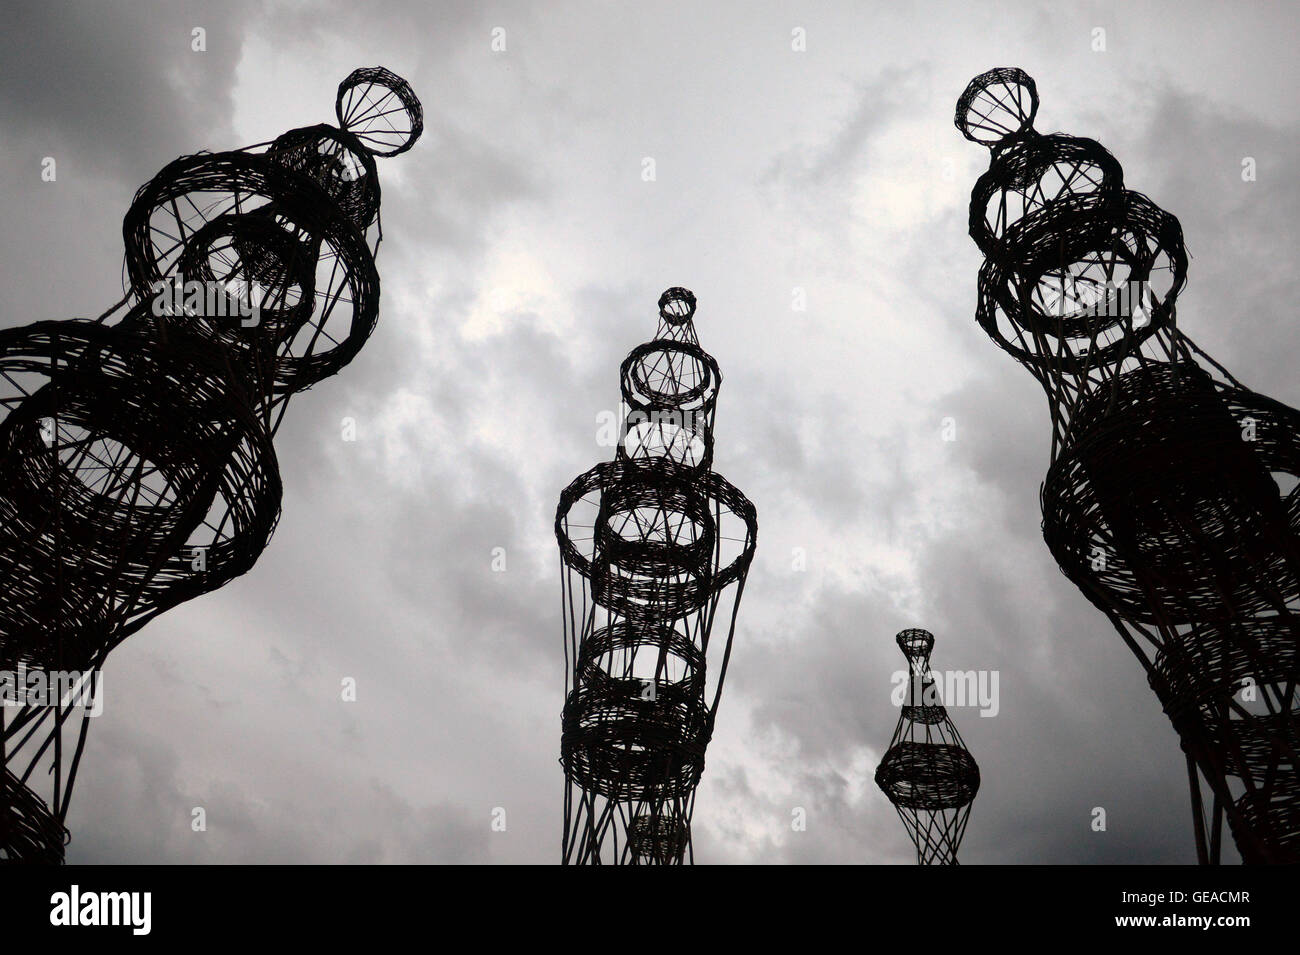 (160724)--NIKOLA-LENIVETS, 24. Juli 2016 (Xinhua)--Kunstwerk "The Cage", während eine Landschaftsarchitektur-Festival namens "Archstoyanie" in Nikola-Lenivets, Russland, 23. Juli 2016 angezeigt wird. Die jährliche Veranstaltung im Nikola-Lenivets außen Moskau brandneue Ideen präsentiert, die Besucher Blick auf Architektur neu definieren könnte. (Xinhua/Pavel Bednyakov) (Zcc) Stockfoto